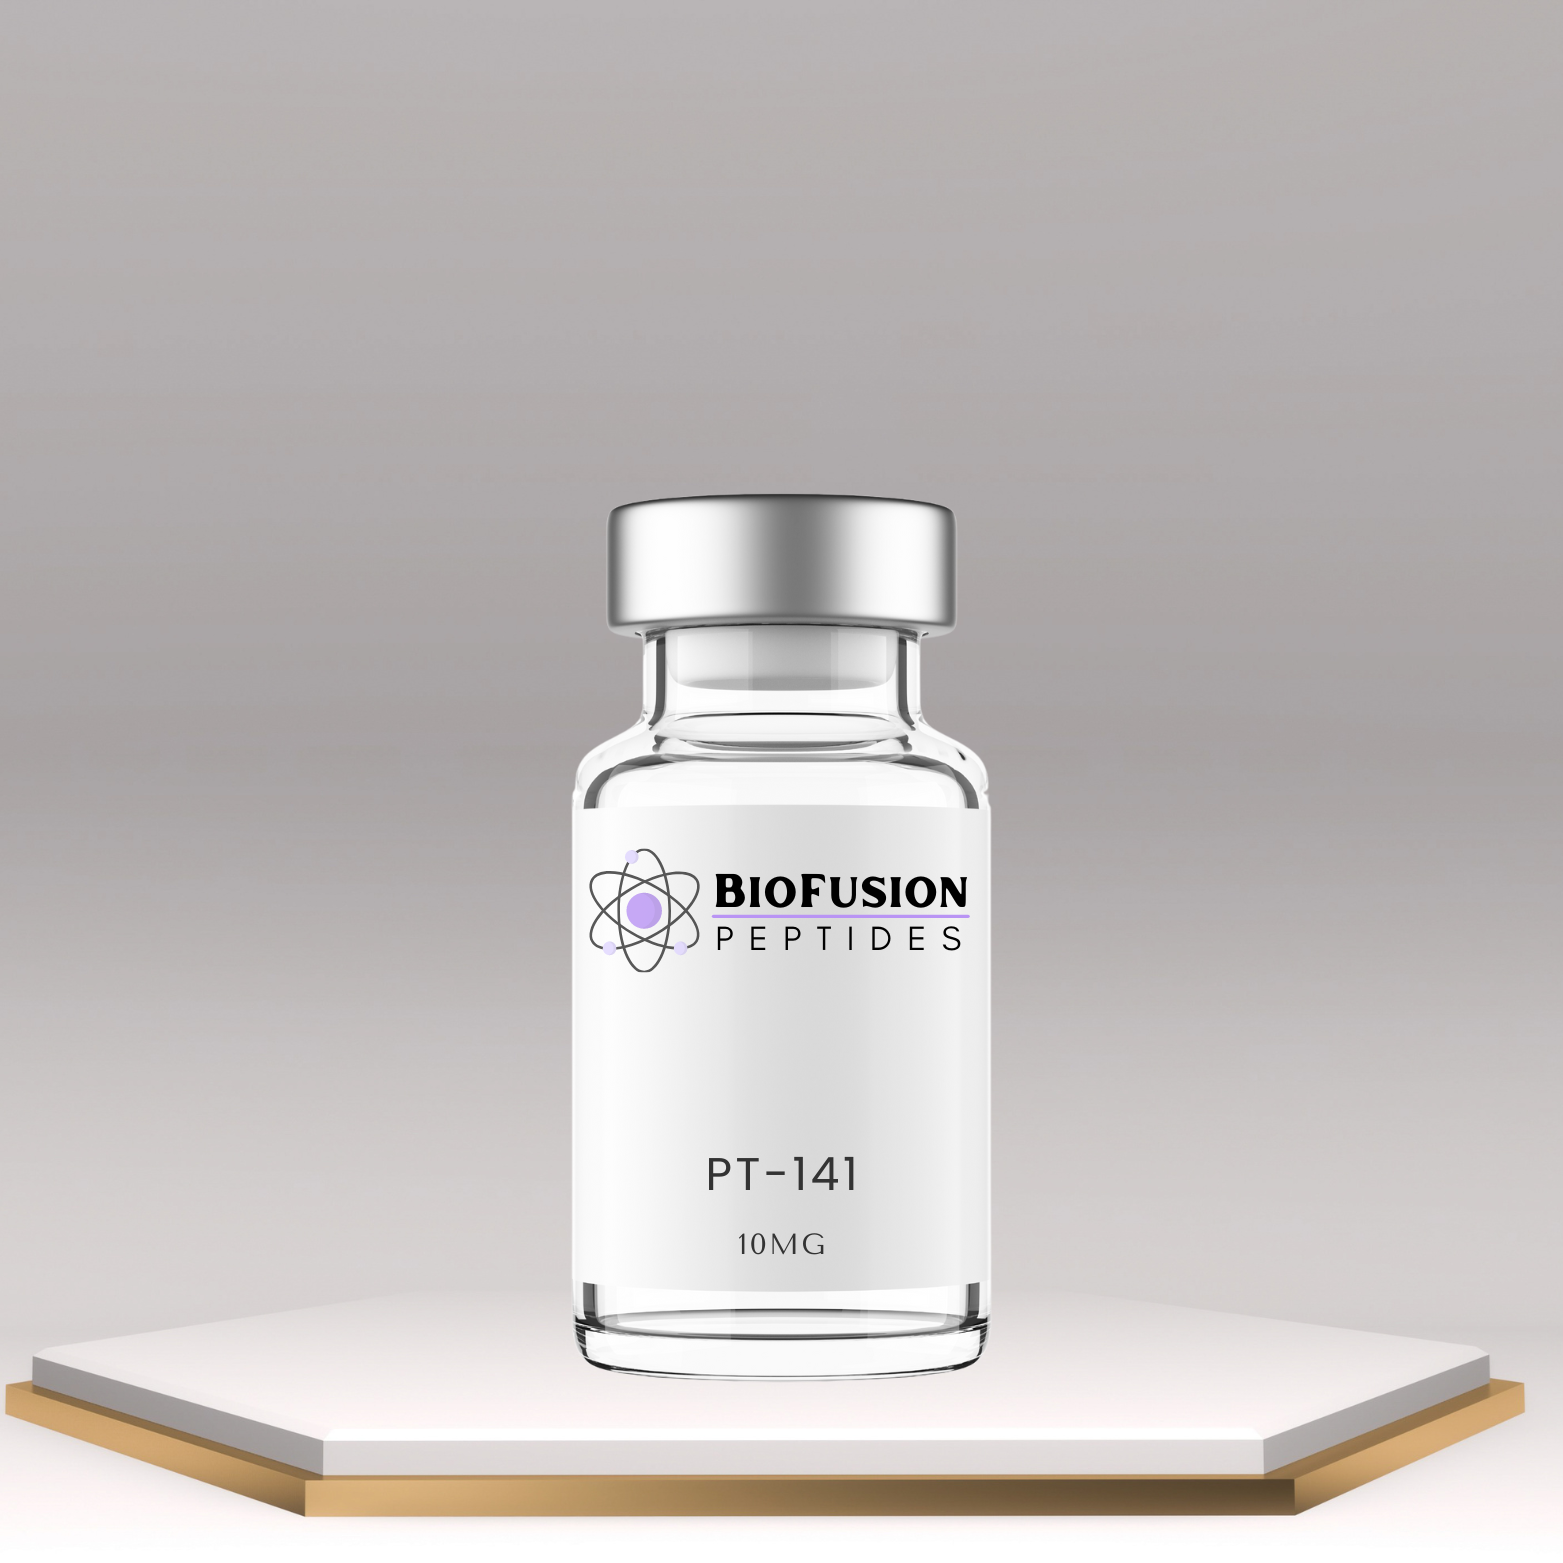 BioFusion Peptides PT-141 10mg vial